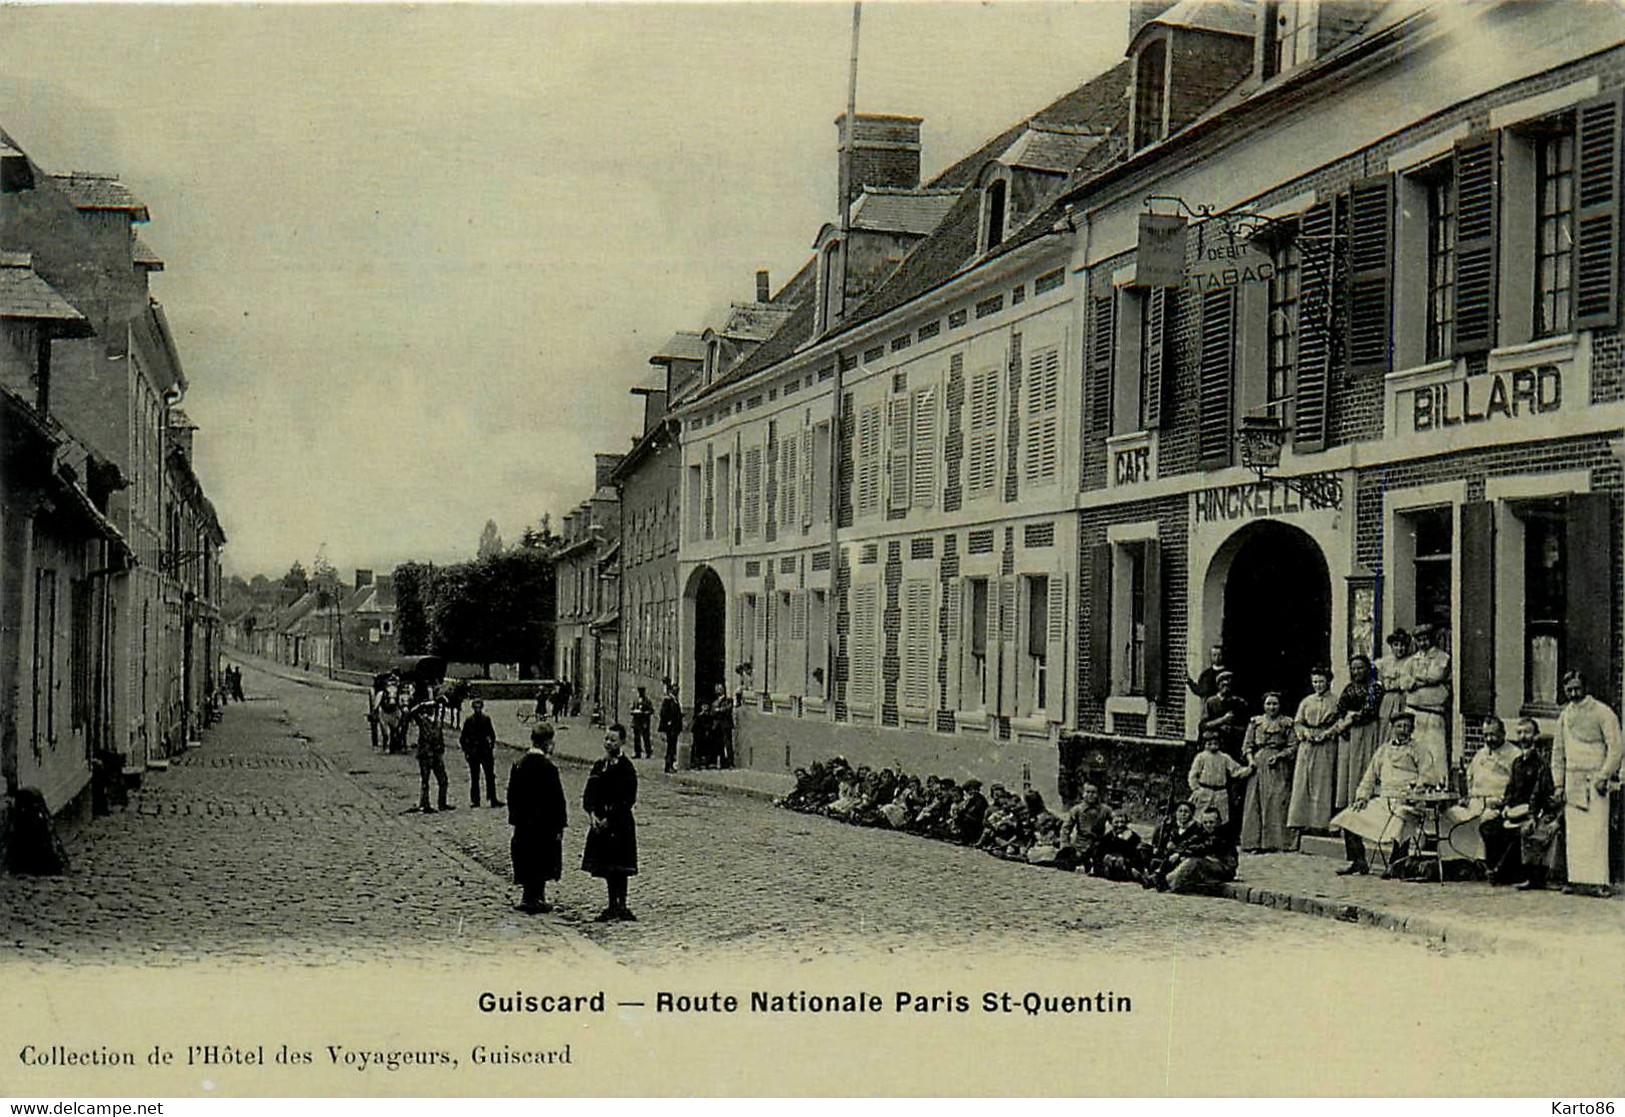 Guiscard * La Route Nationale Paris St Quentin * Café Débit De Tabac Billard * Villageois - Guiscard